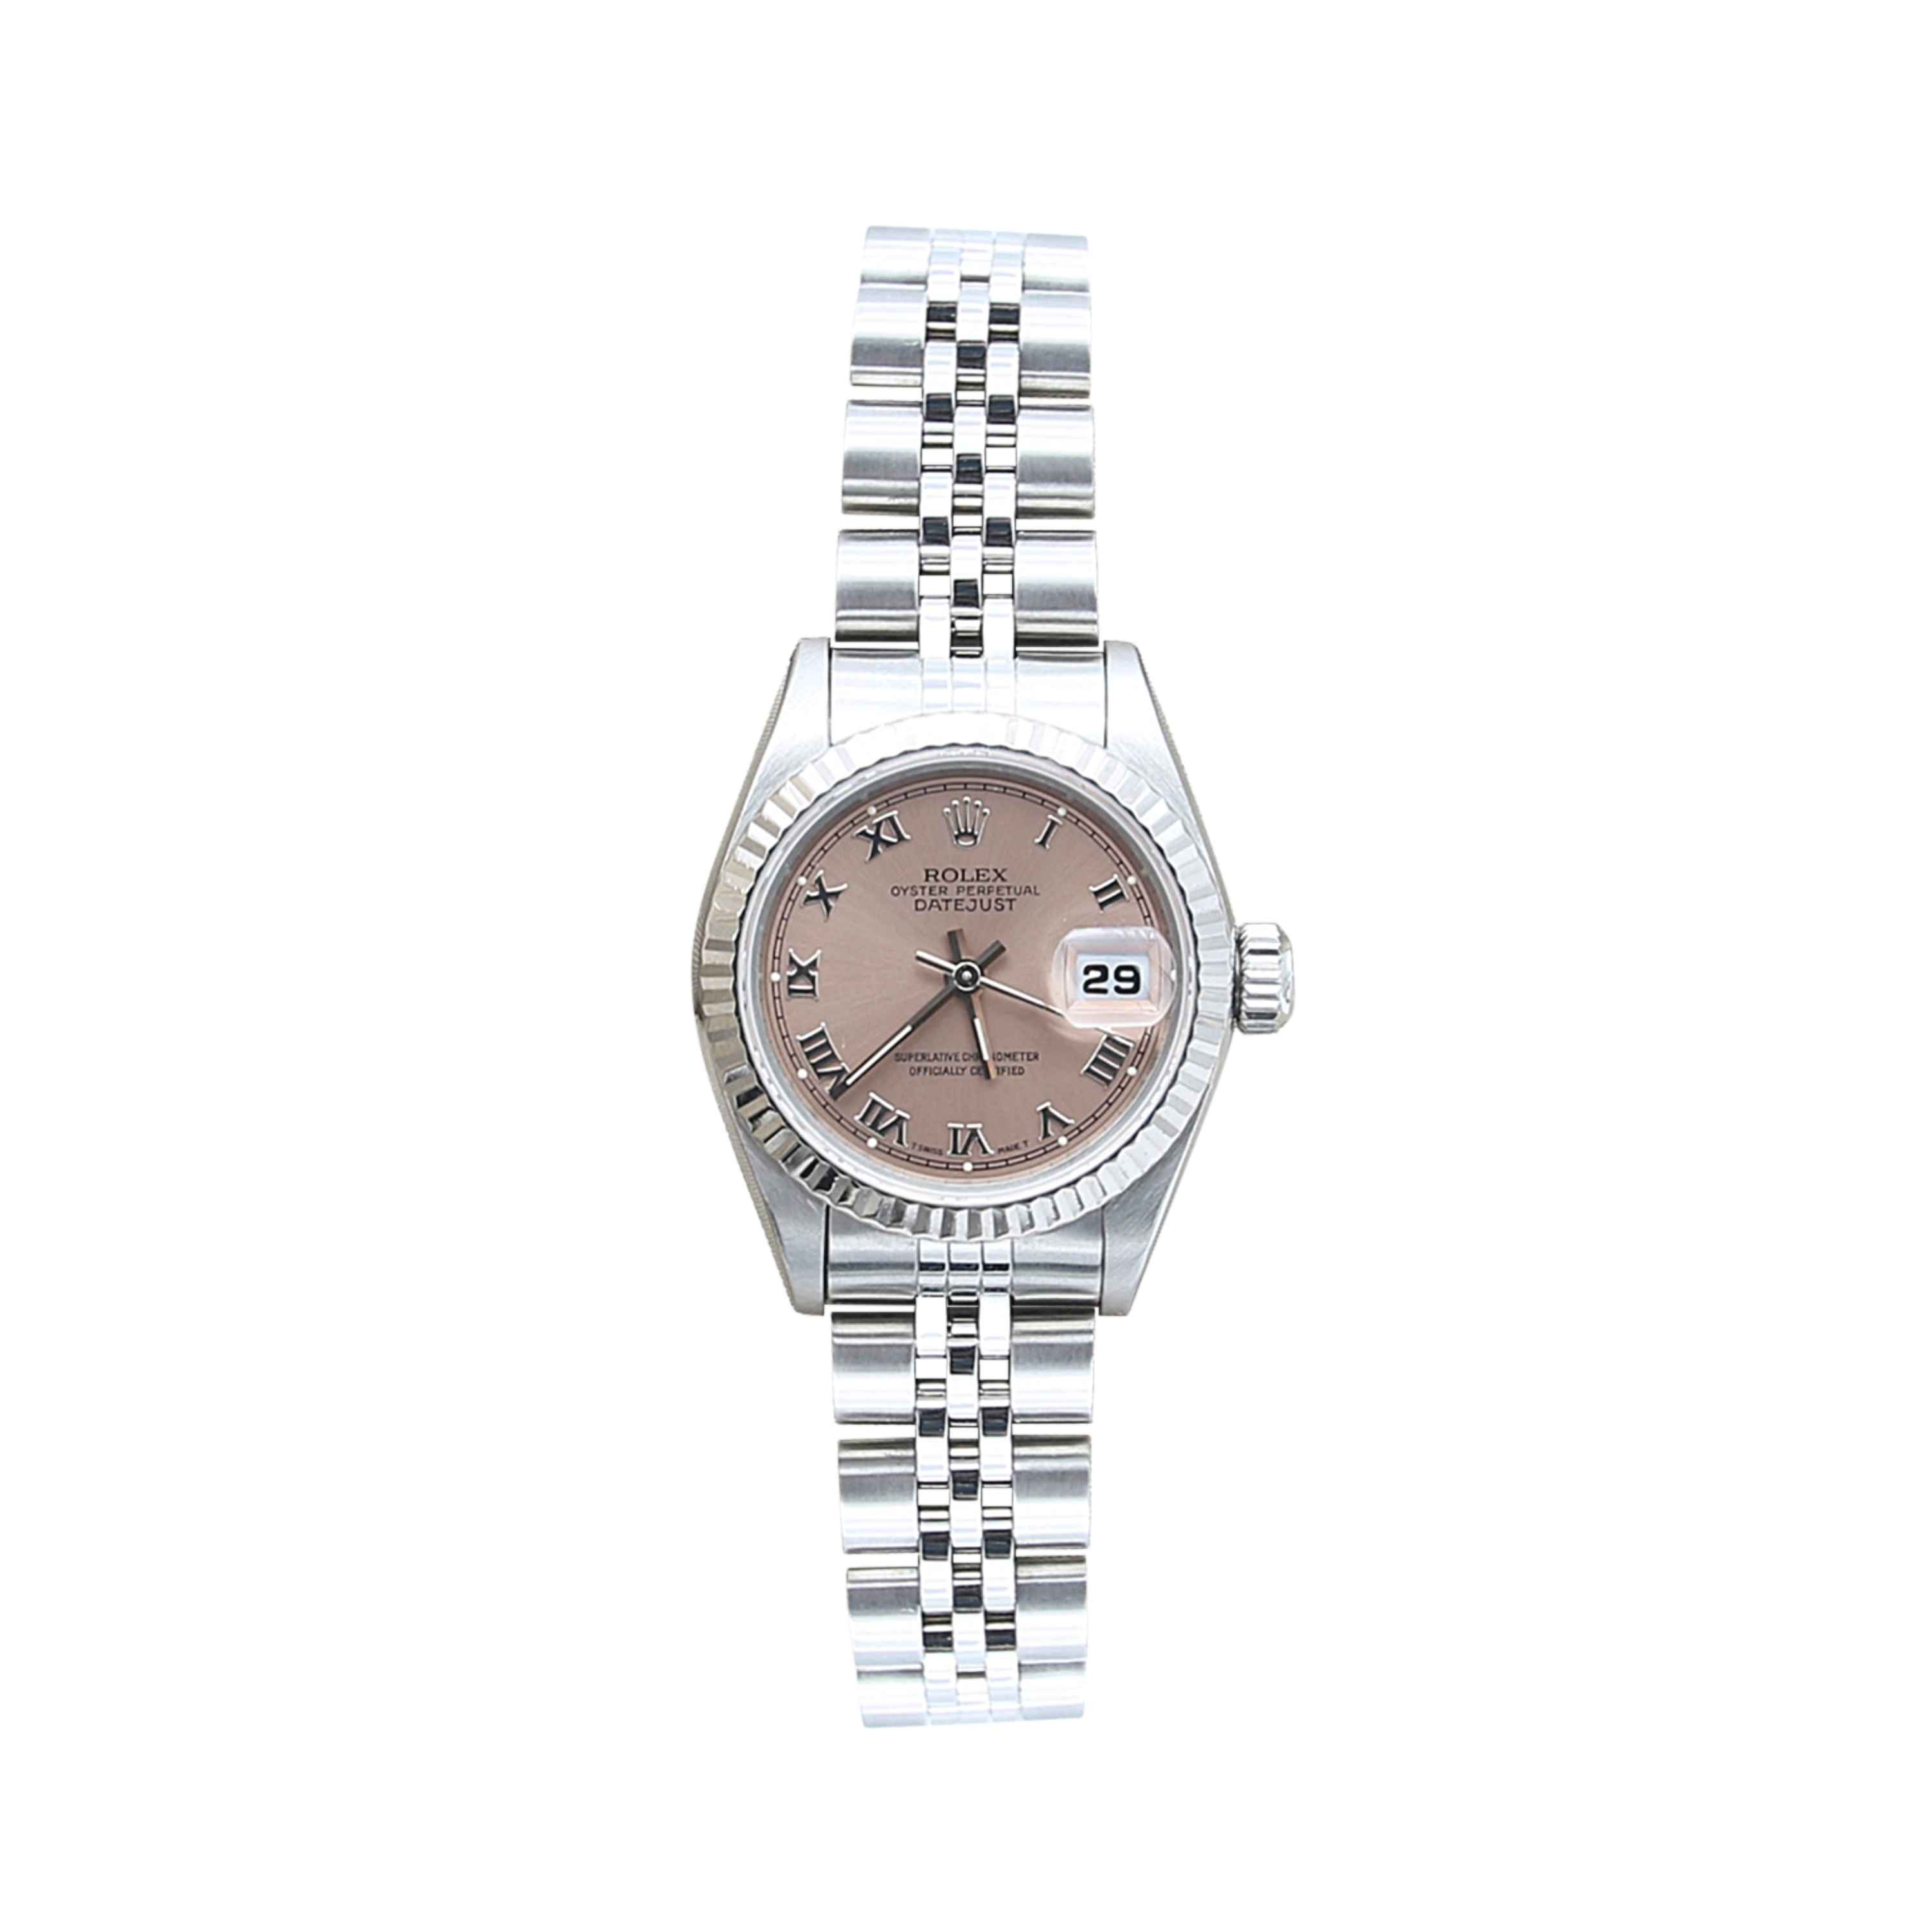 Rolex Lady-Datejust ref. 69174 - Salmon Roman Dial Jubilee bracelet - Warranty Papers